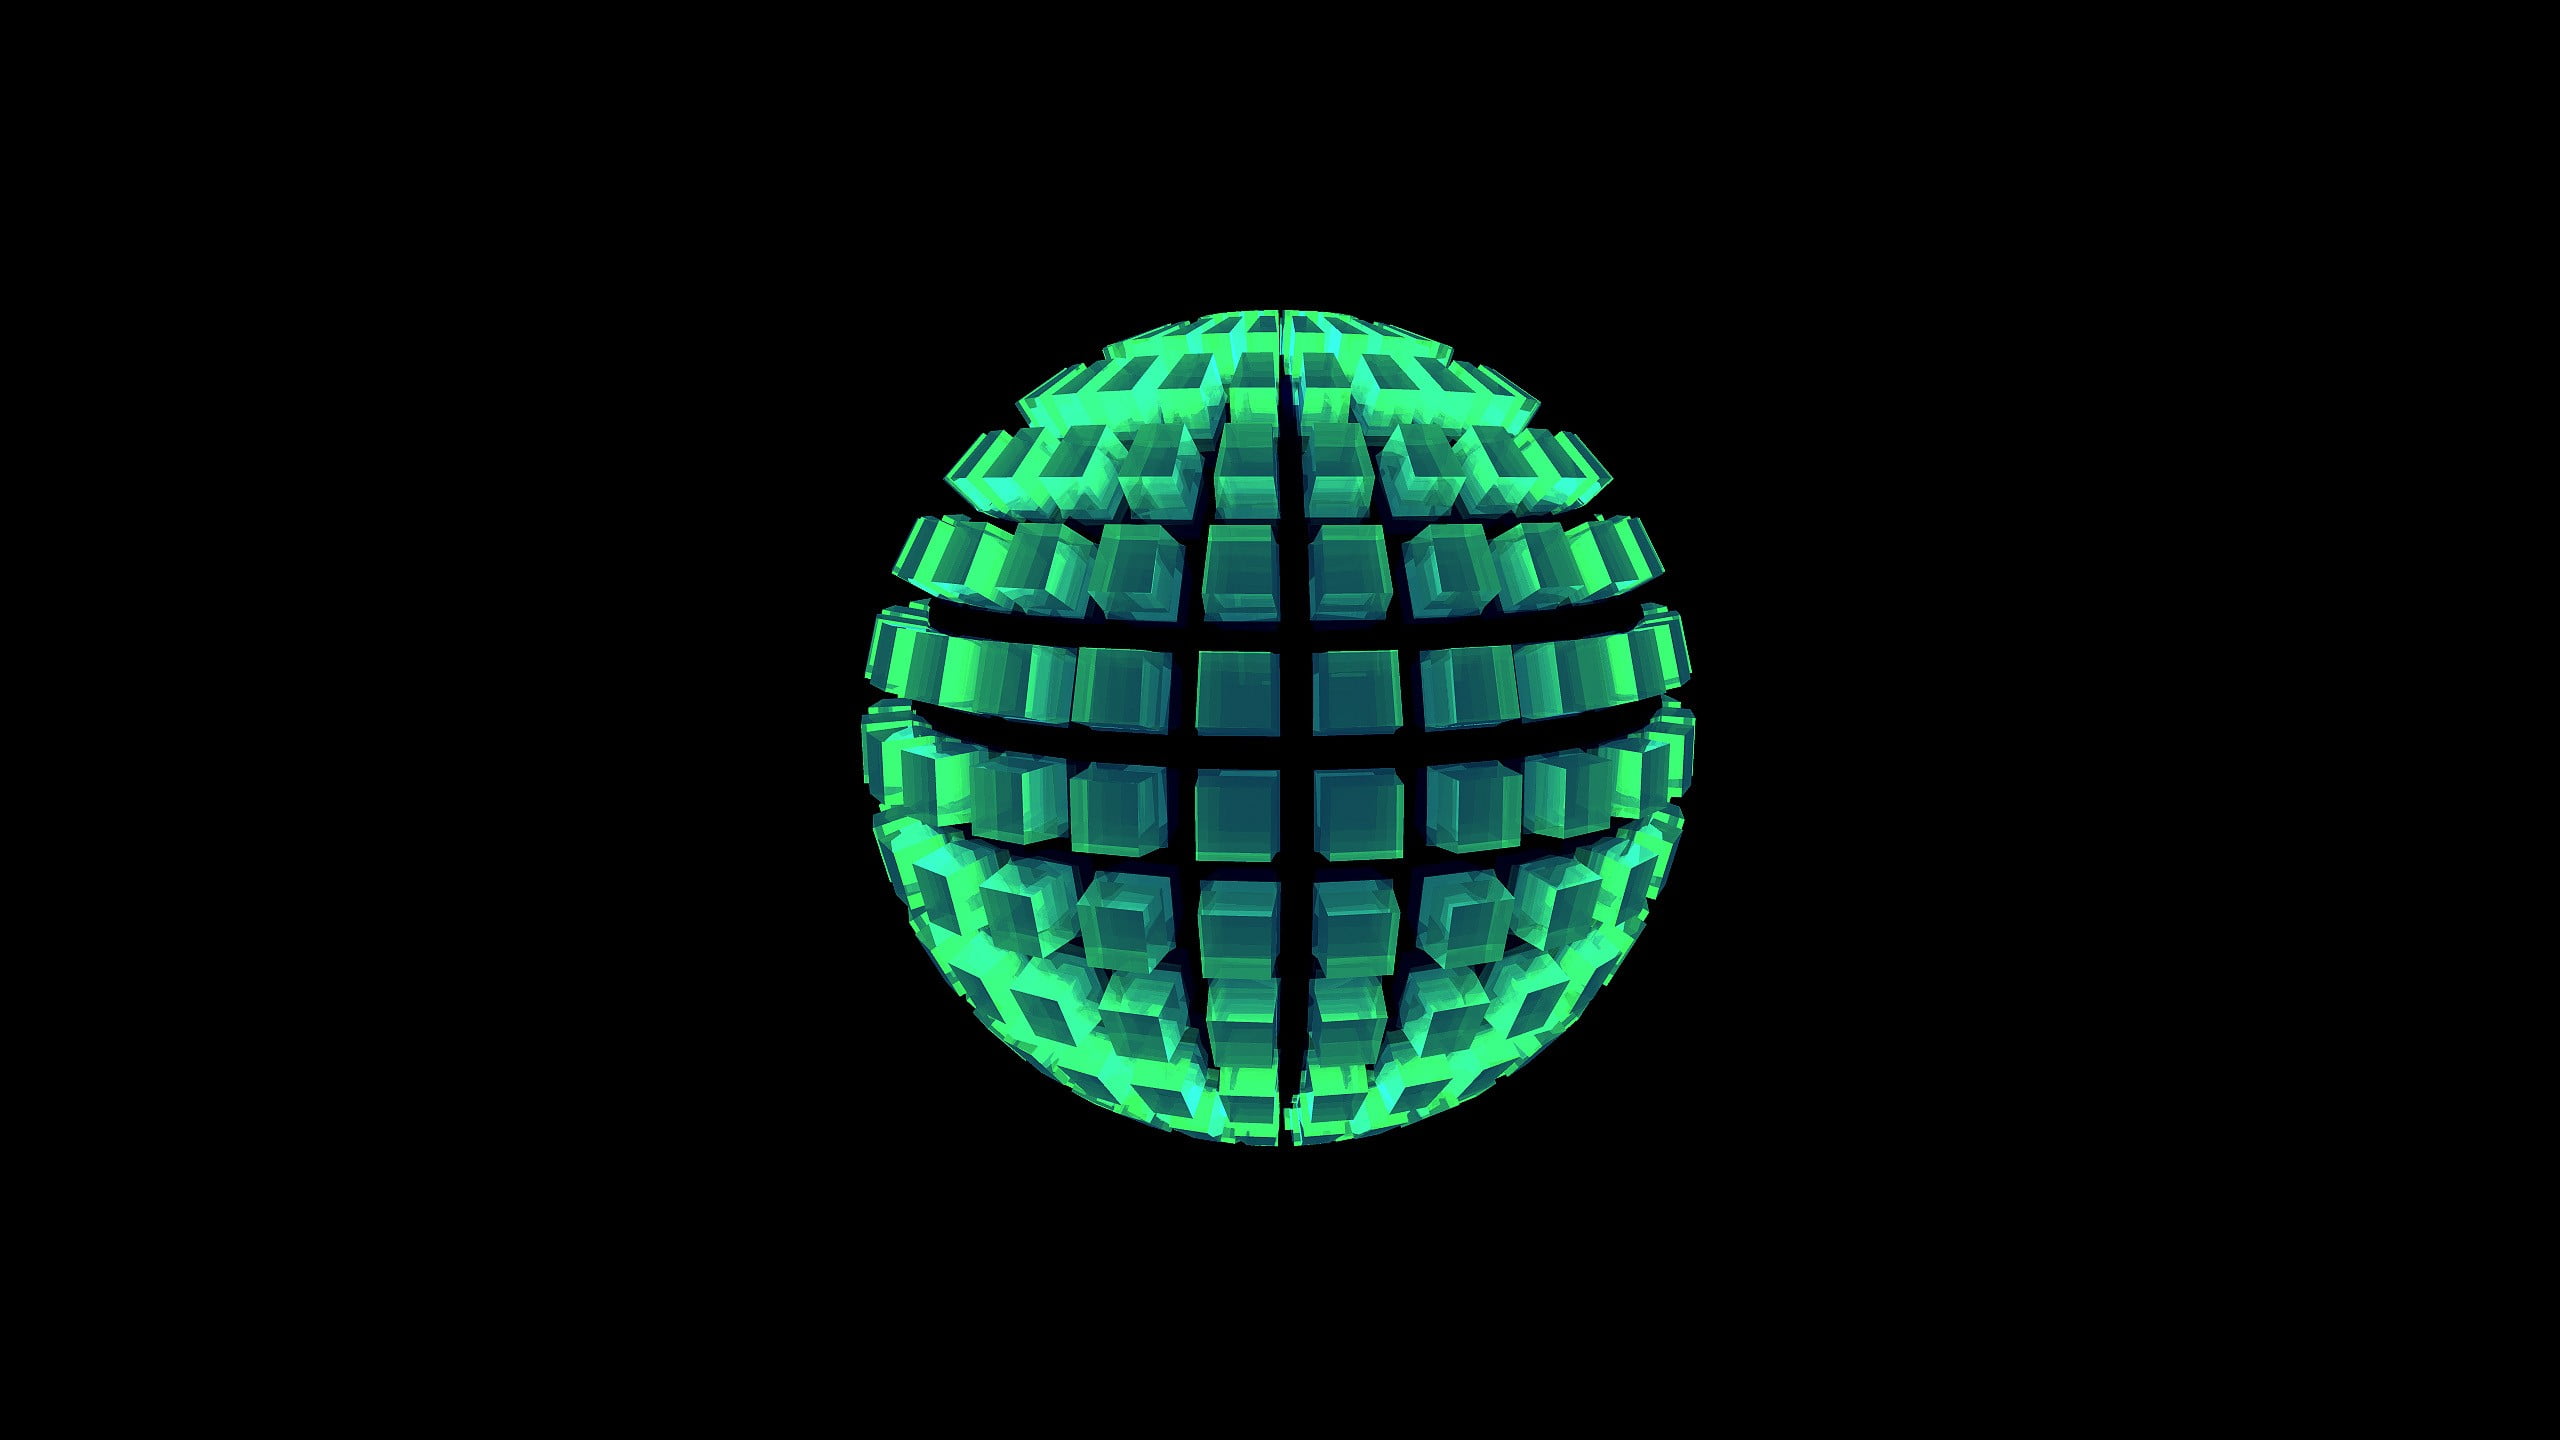 green 3D sphere, digital art, sphere